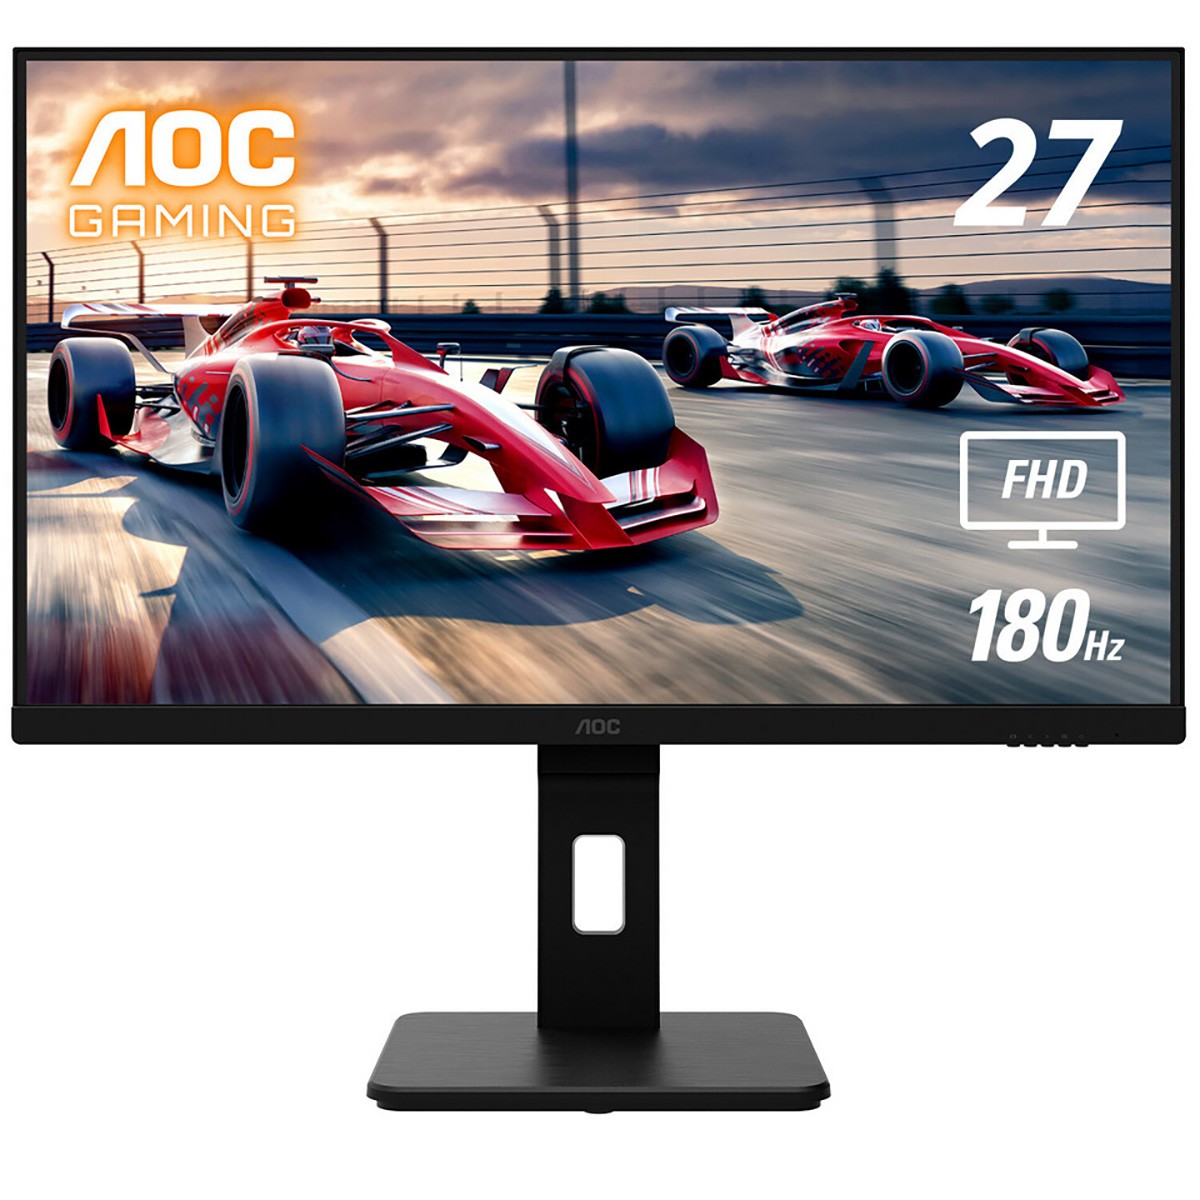 AOC 27G15 est un écran FHD de 27 pouces capable de monter jusqu'à 180 Hz et pour 150 dollars